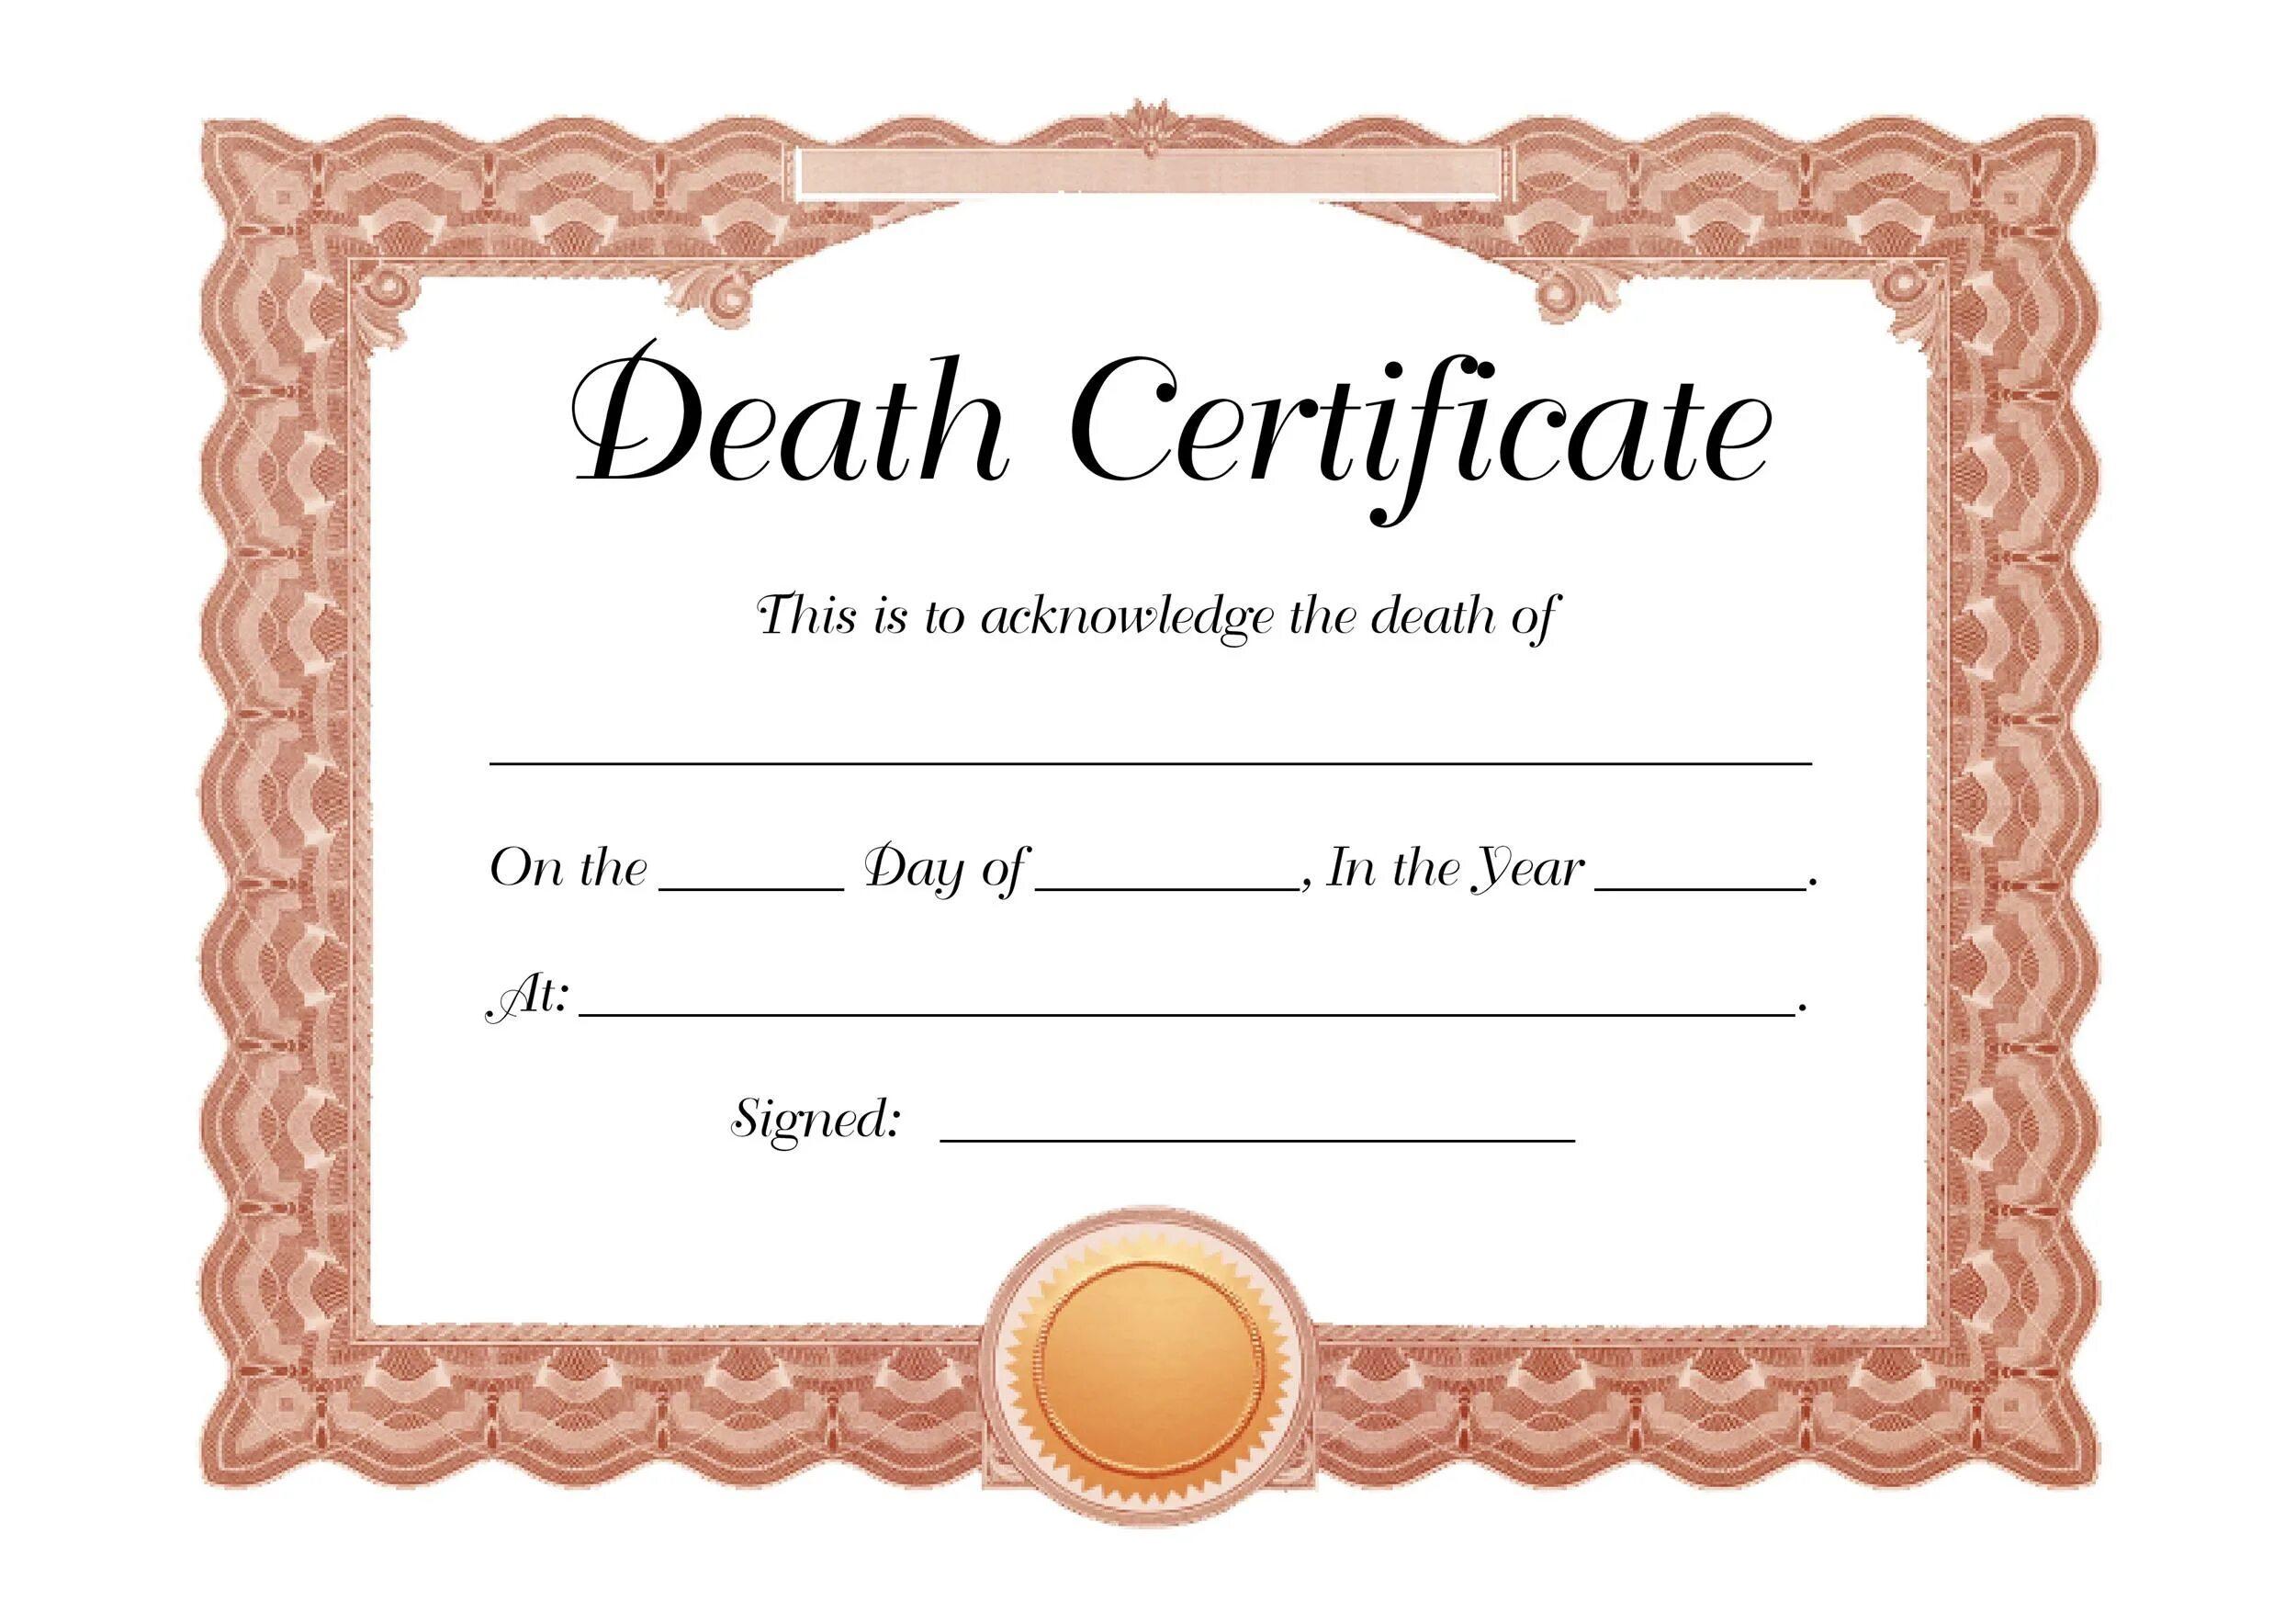 Death Certificate Template. Death Certificate Cube. Certificate blank. Fake Death Certificate.